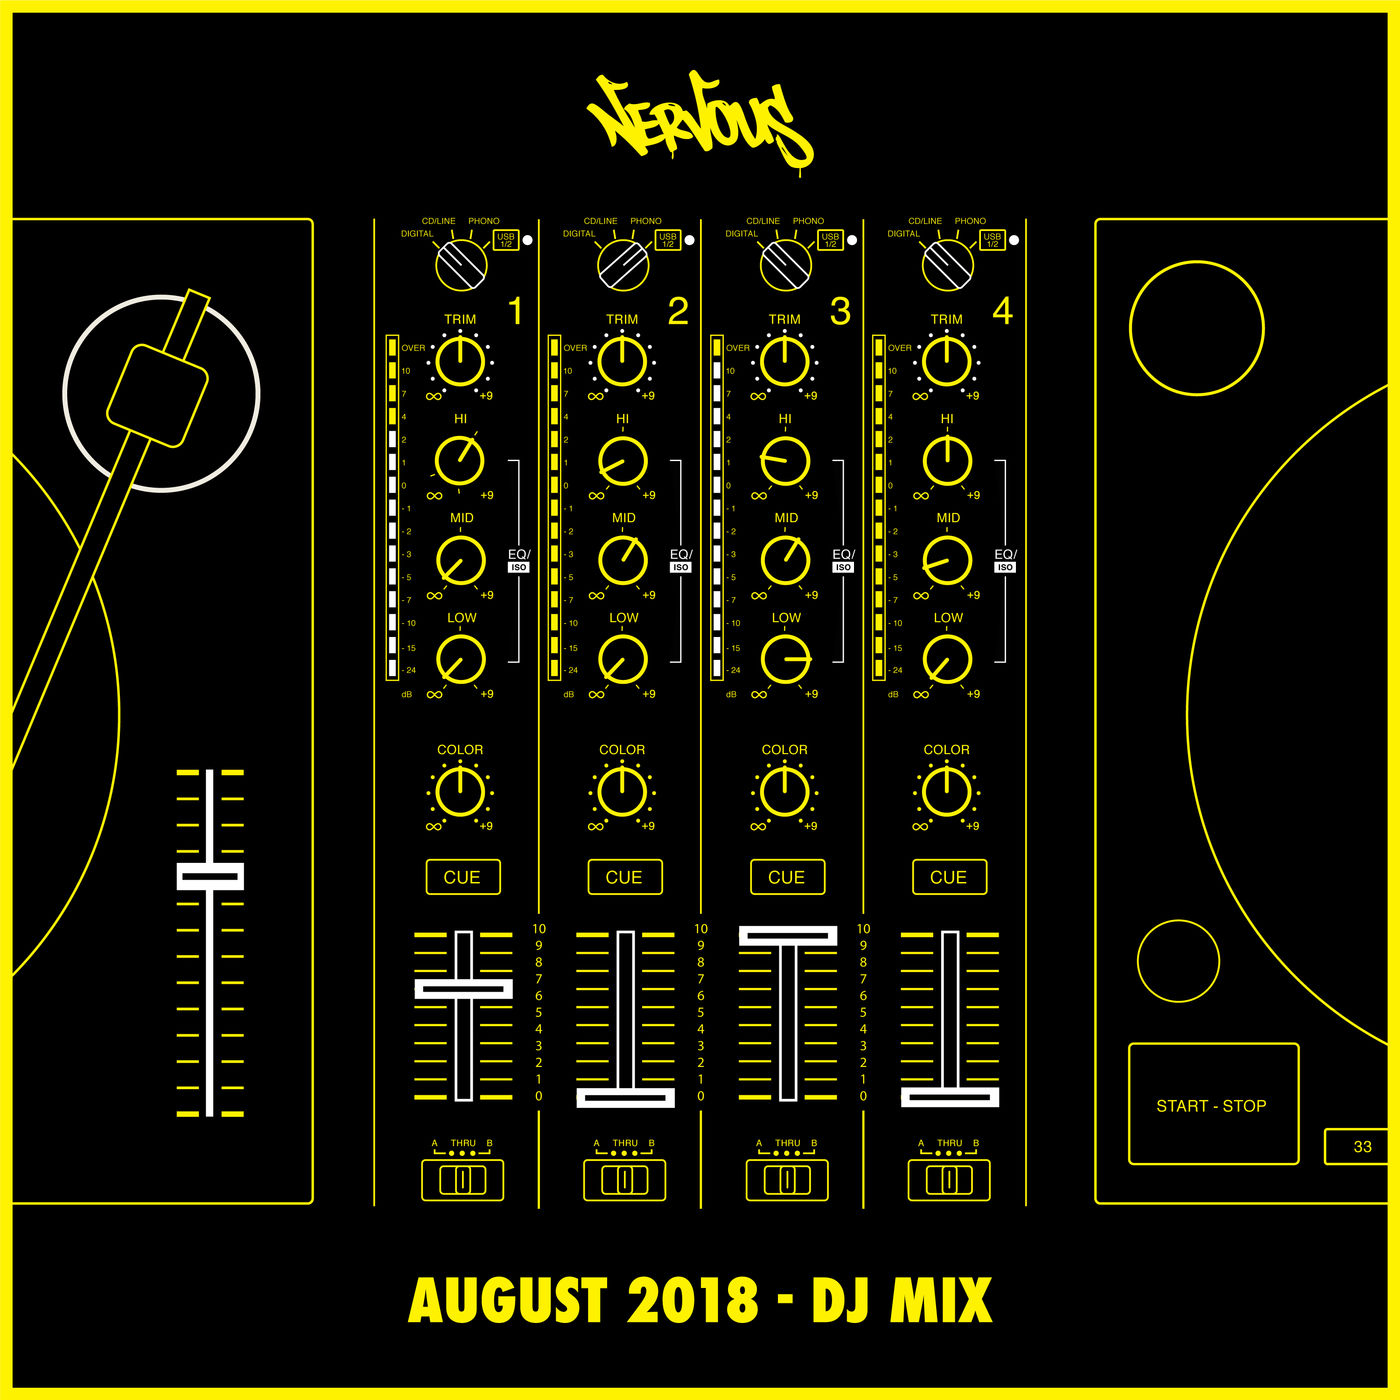 VA - Nervous August 2018: DJ Mix / Nervous Records